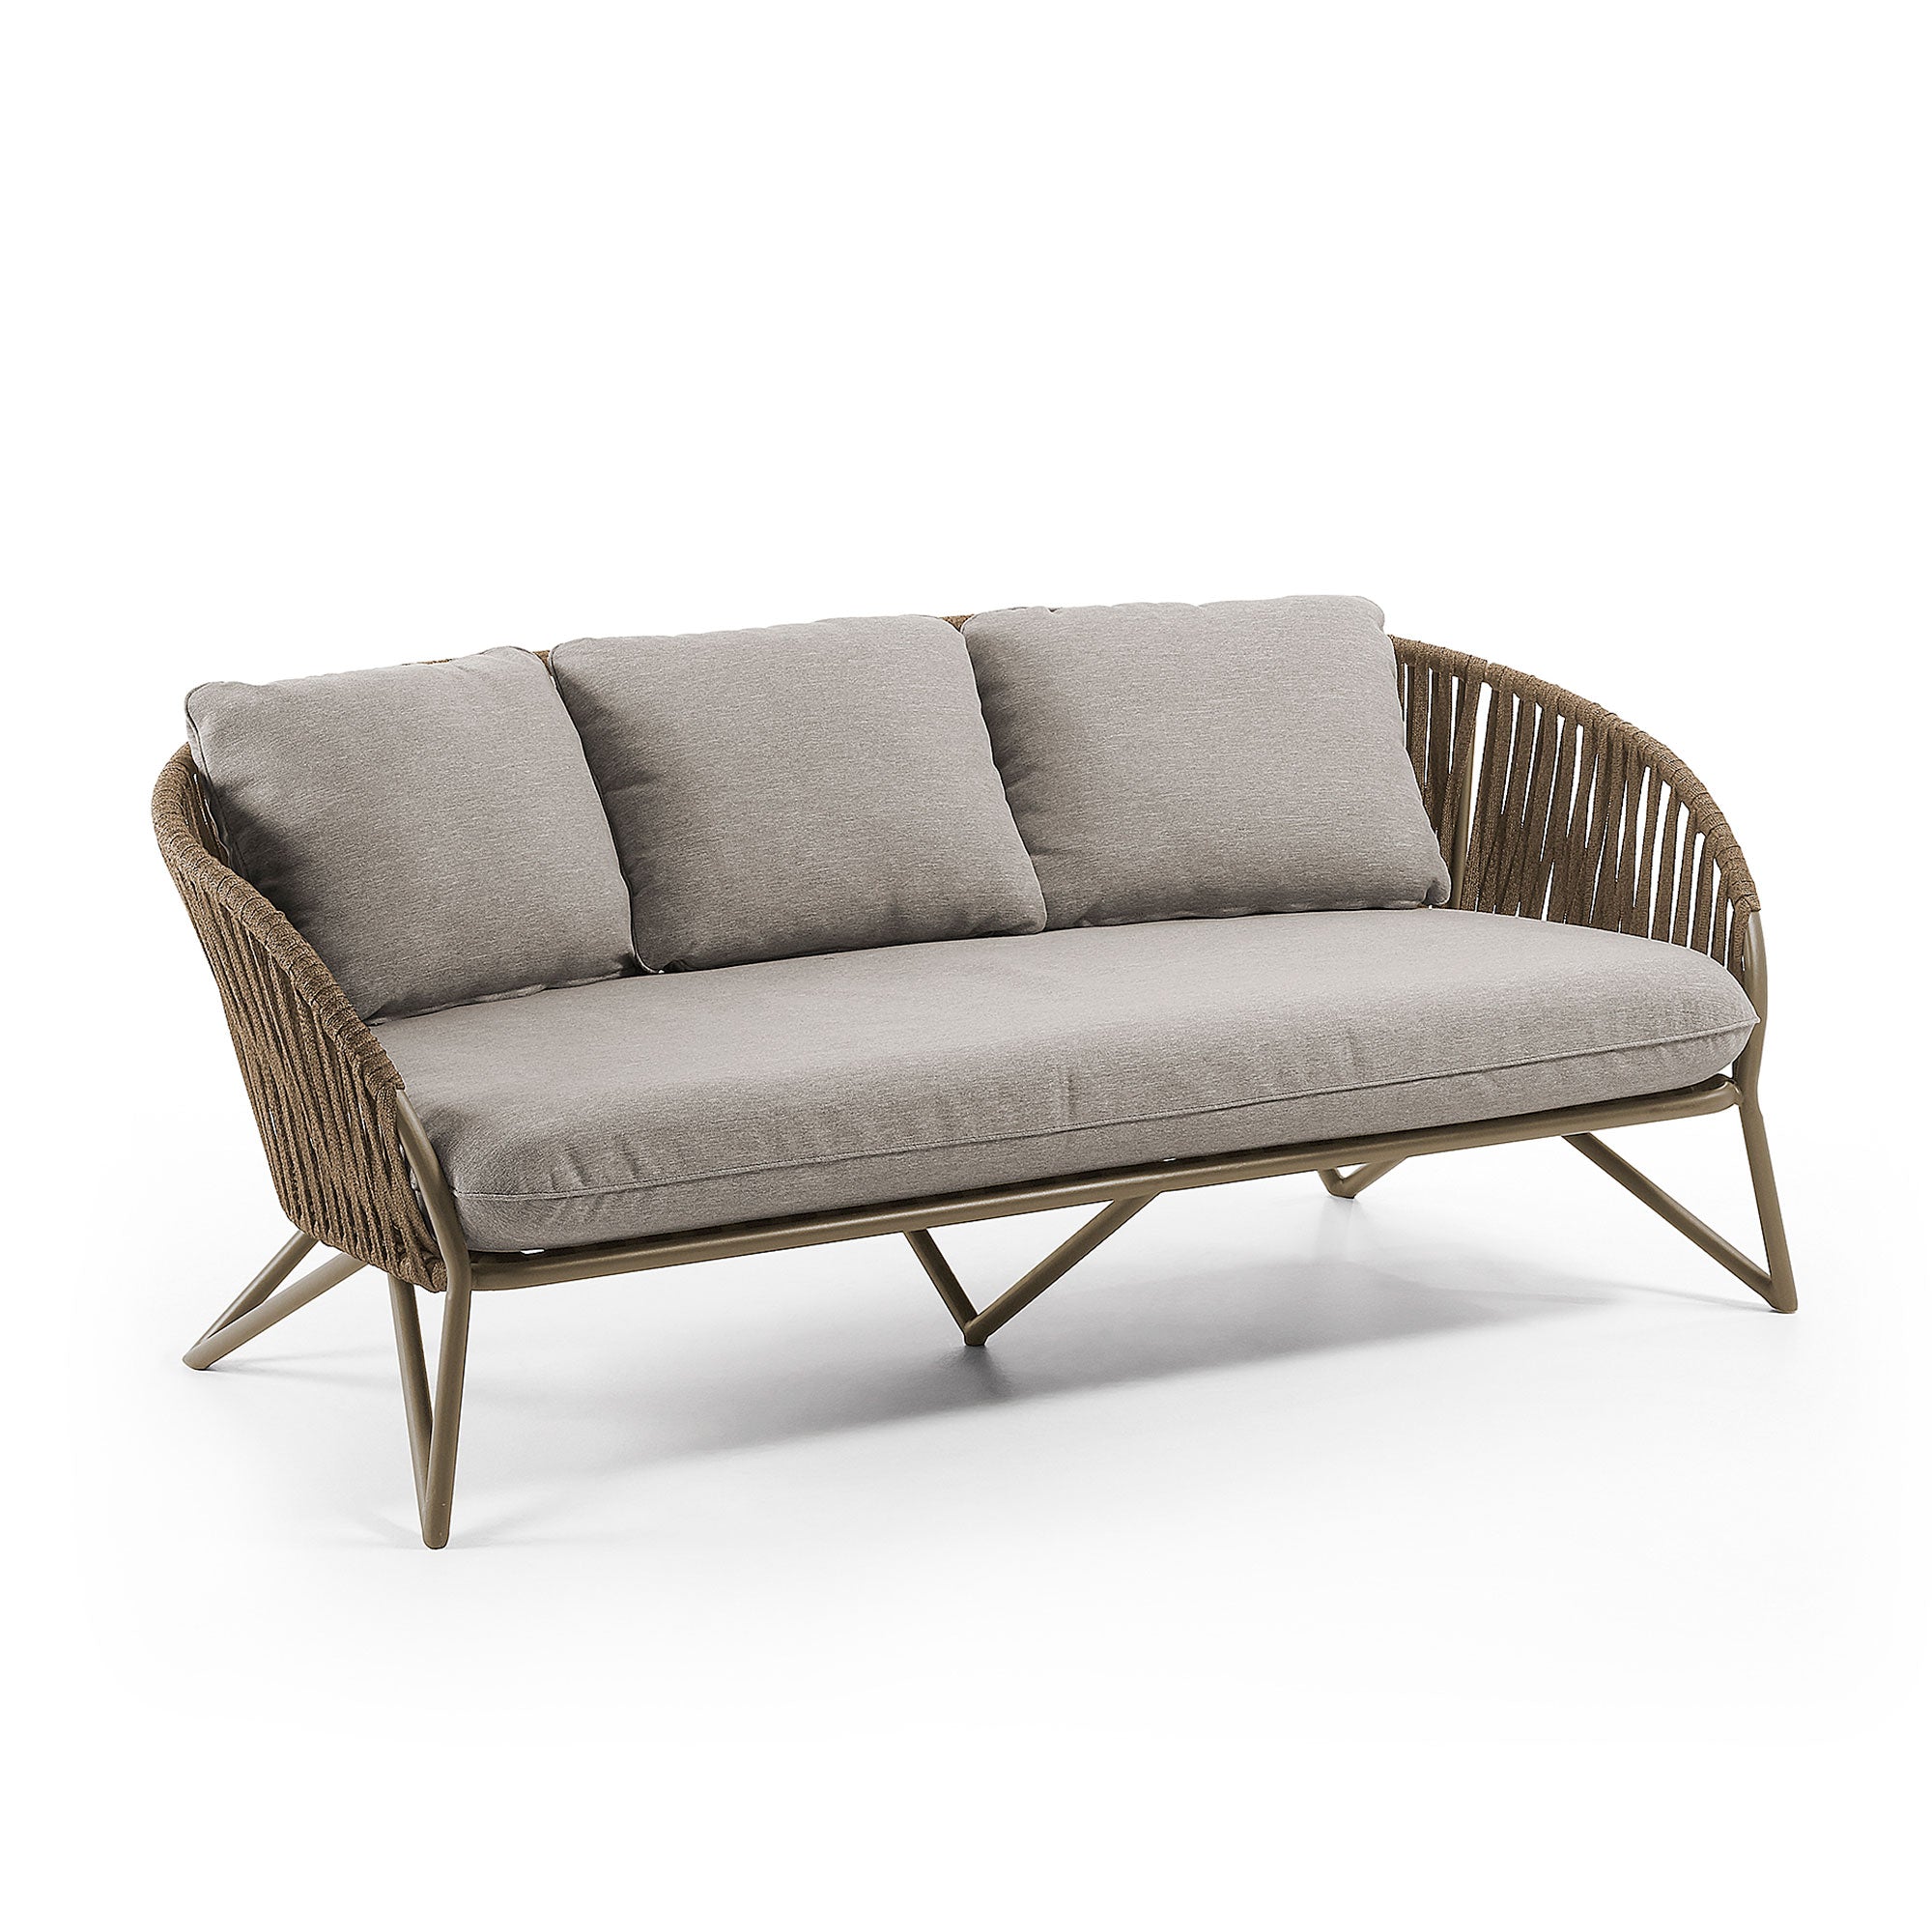 3 személyes Branzie kanapé, barna zsinórból, 180 cm